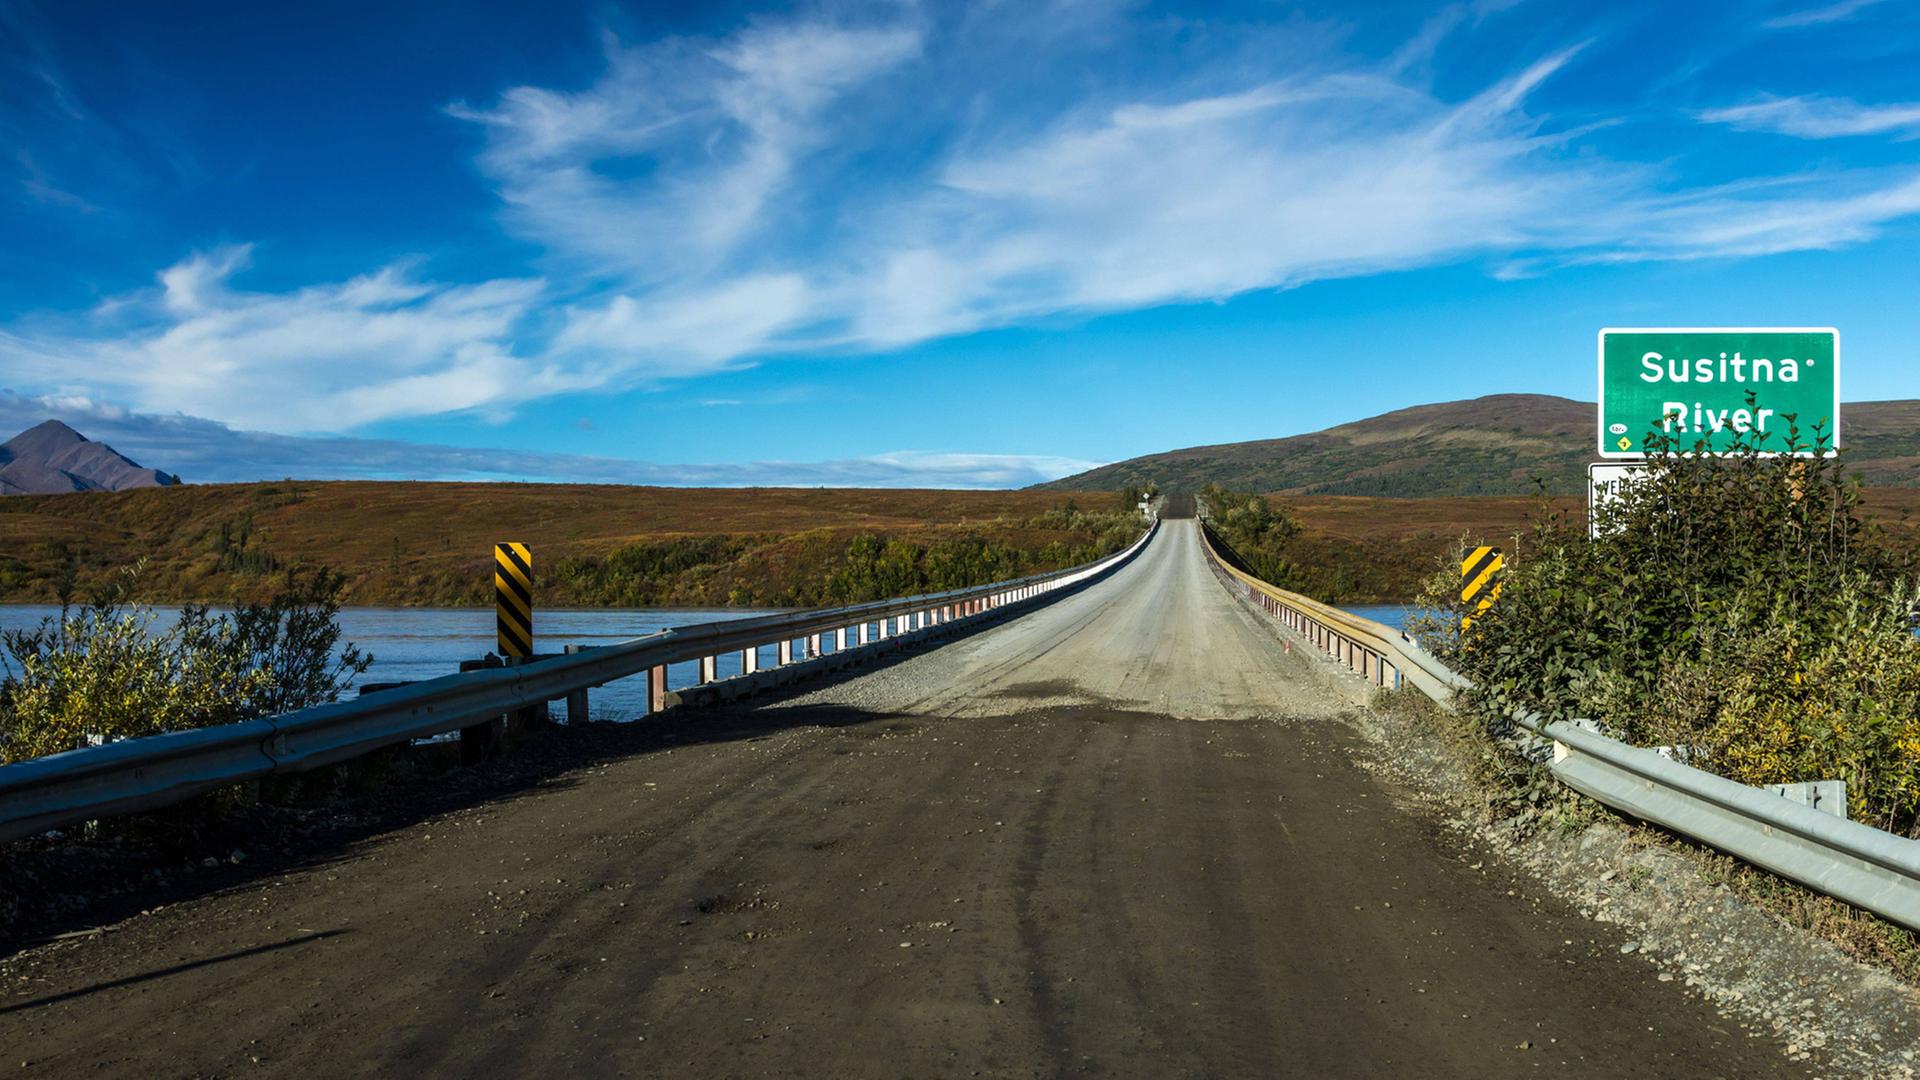 Susitna River Bridge auf dem Alaska Highway, dem Landweg zwischen den USA und ihrem nördlichsten Bundesstaat